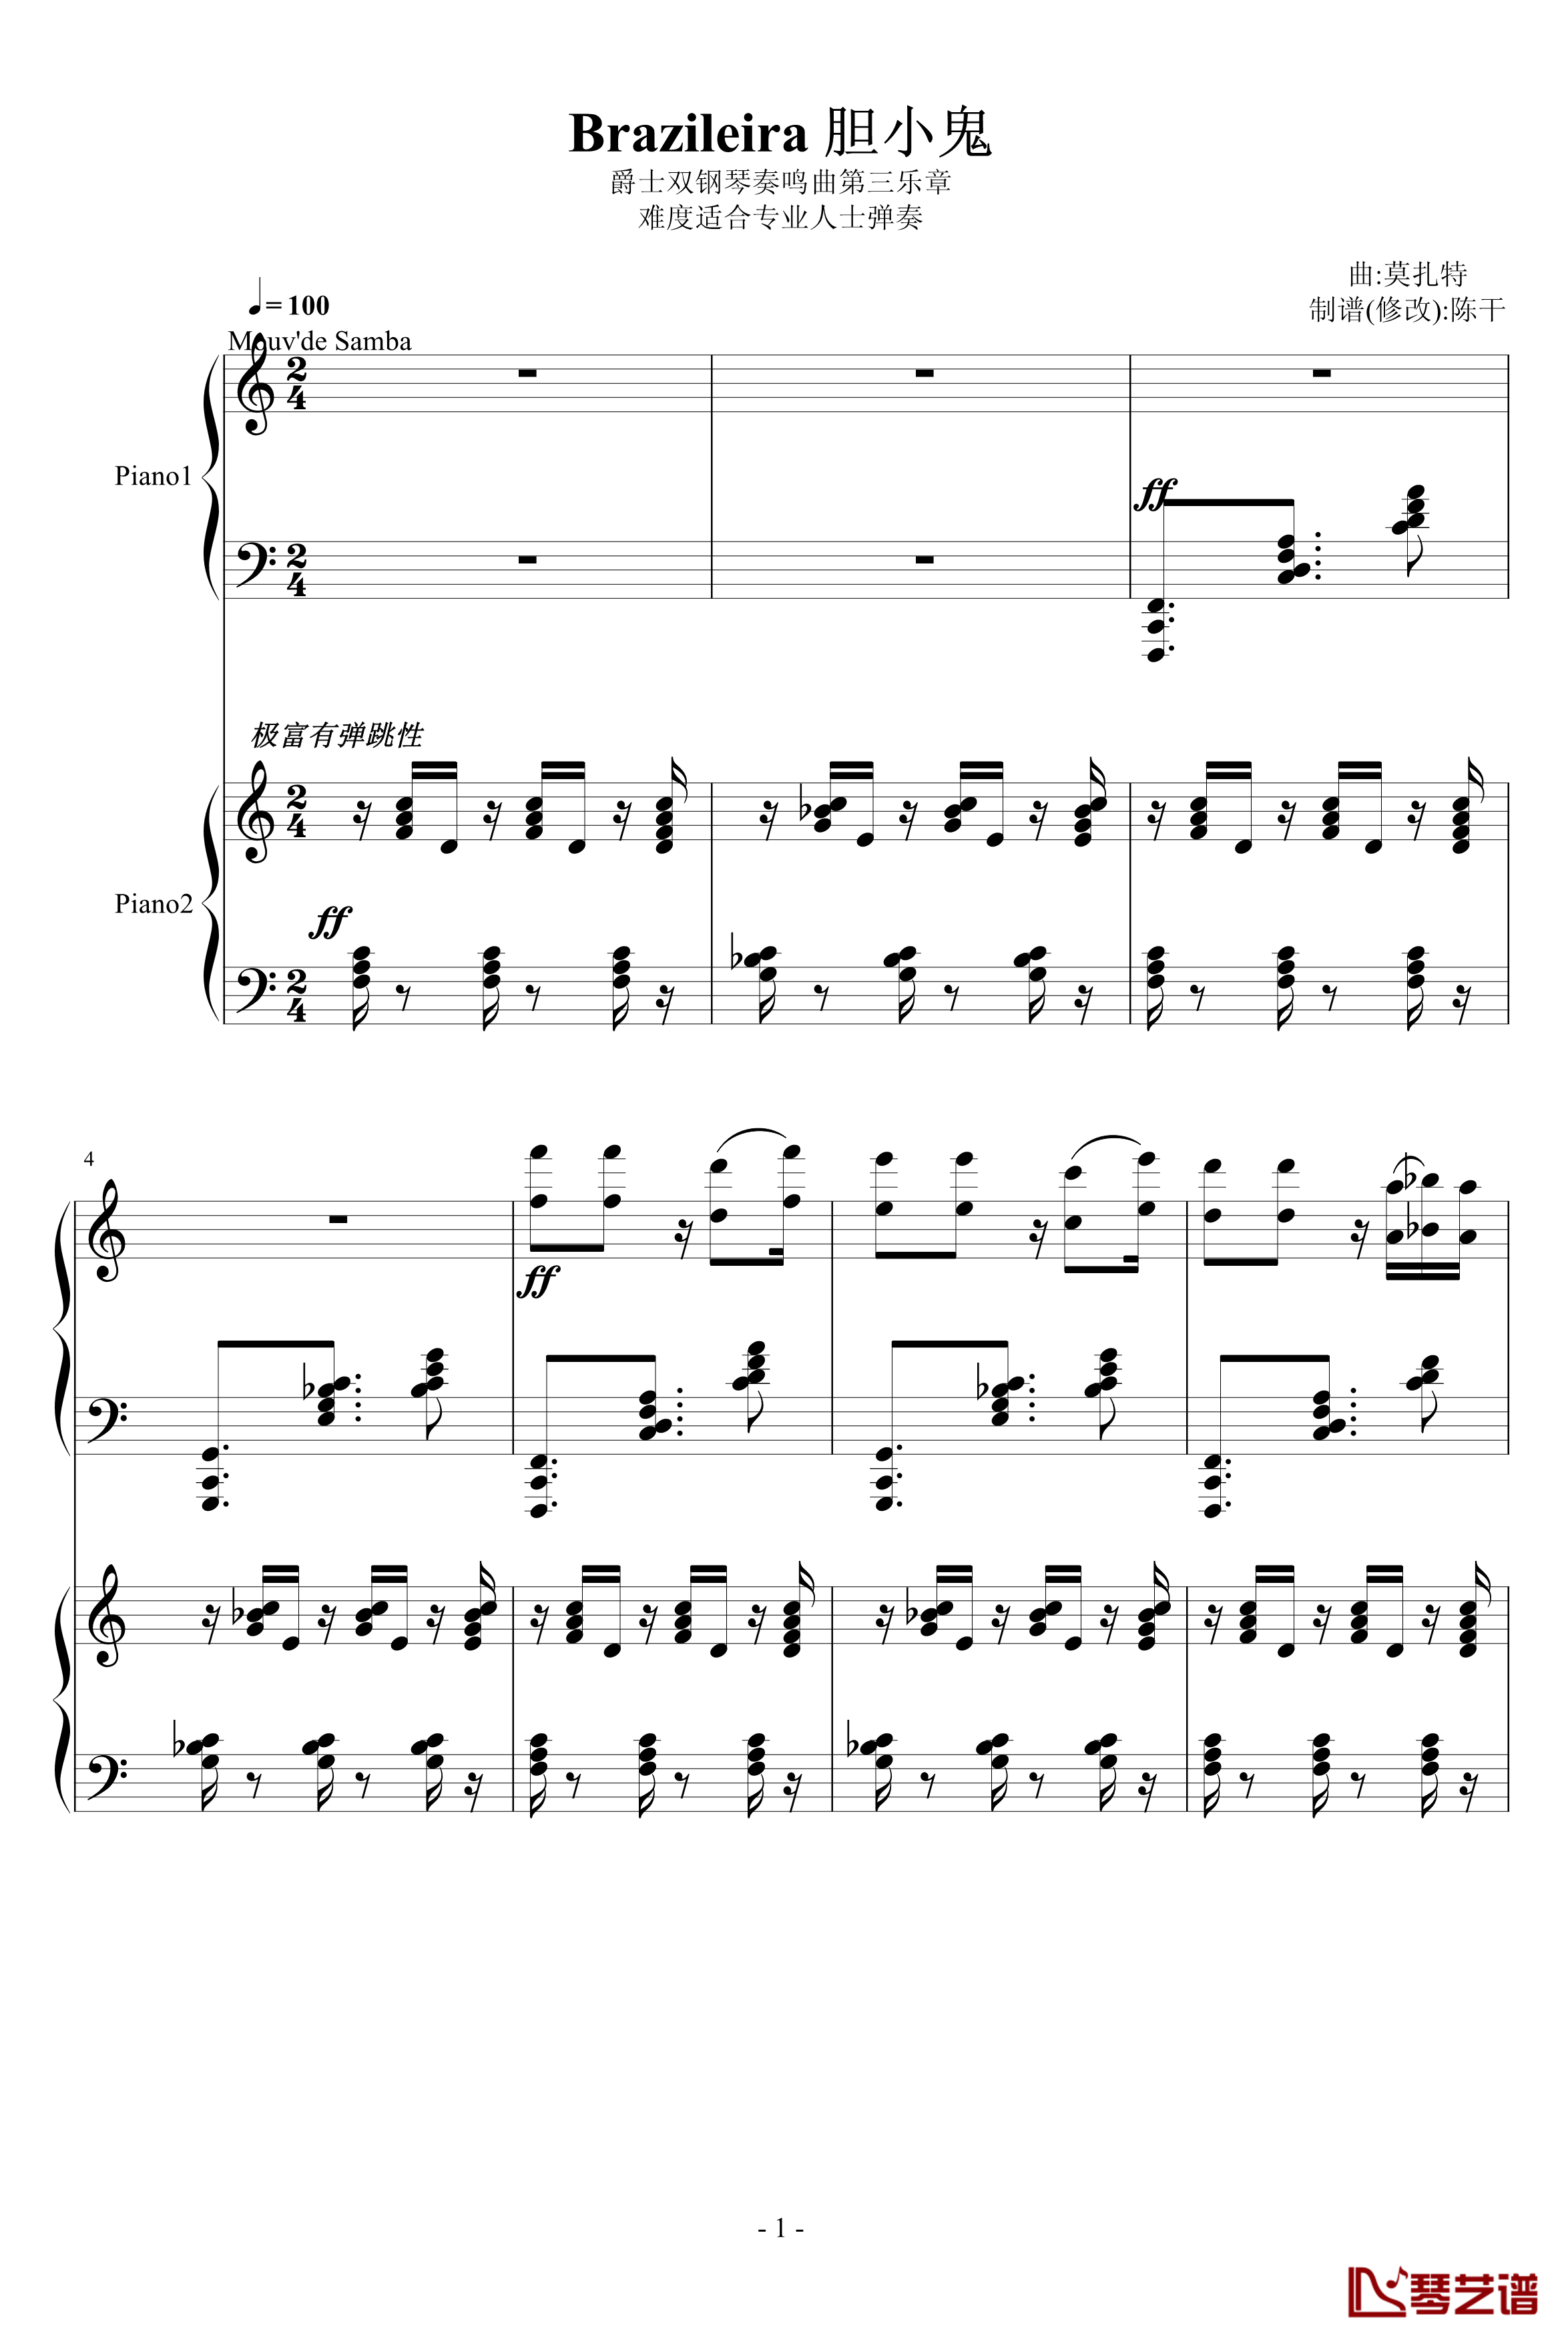 爵士双钢琴奏鸣曲第三乐章钢琴谱-米约1